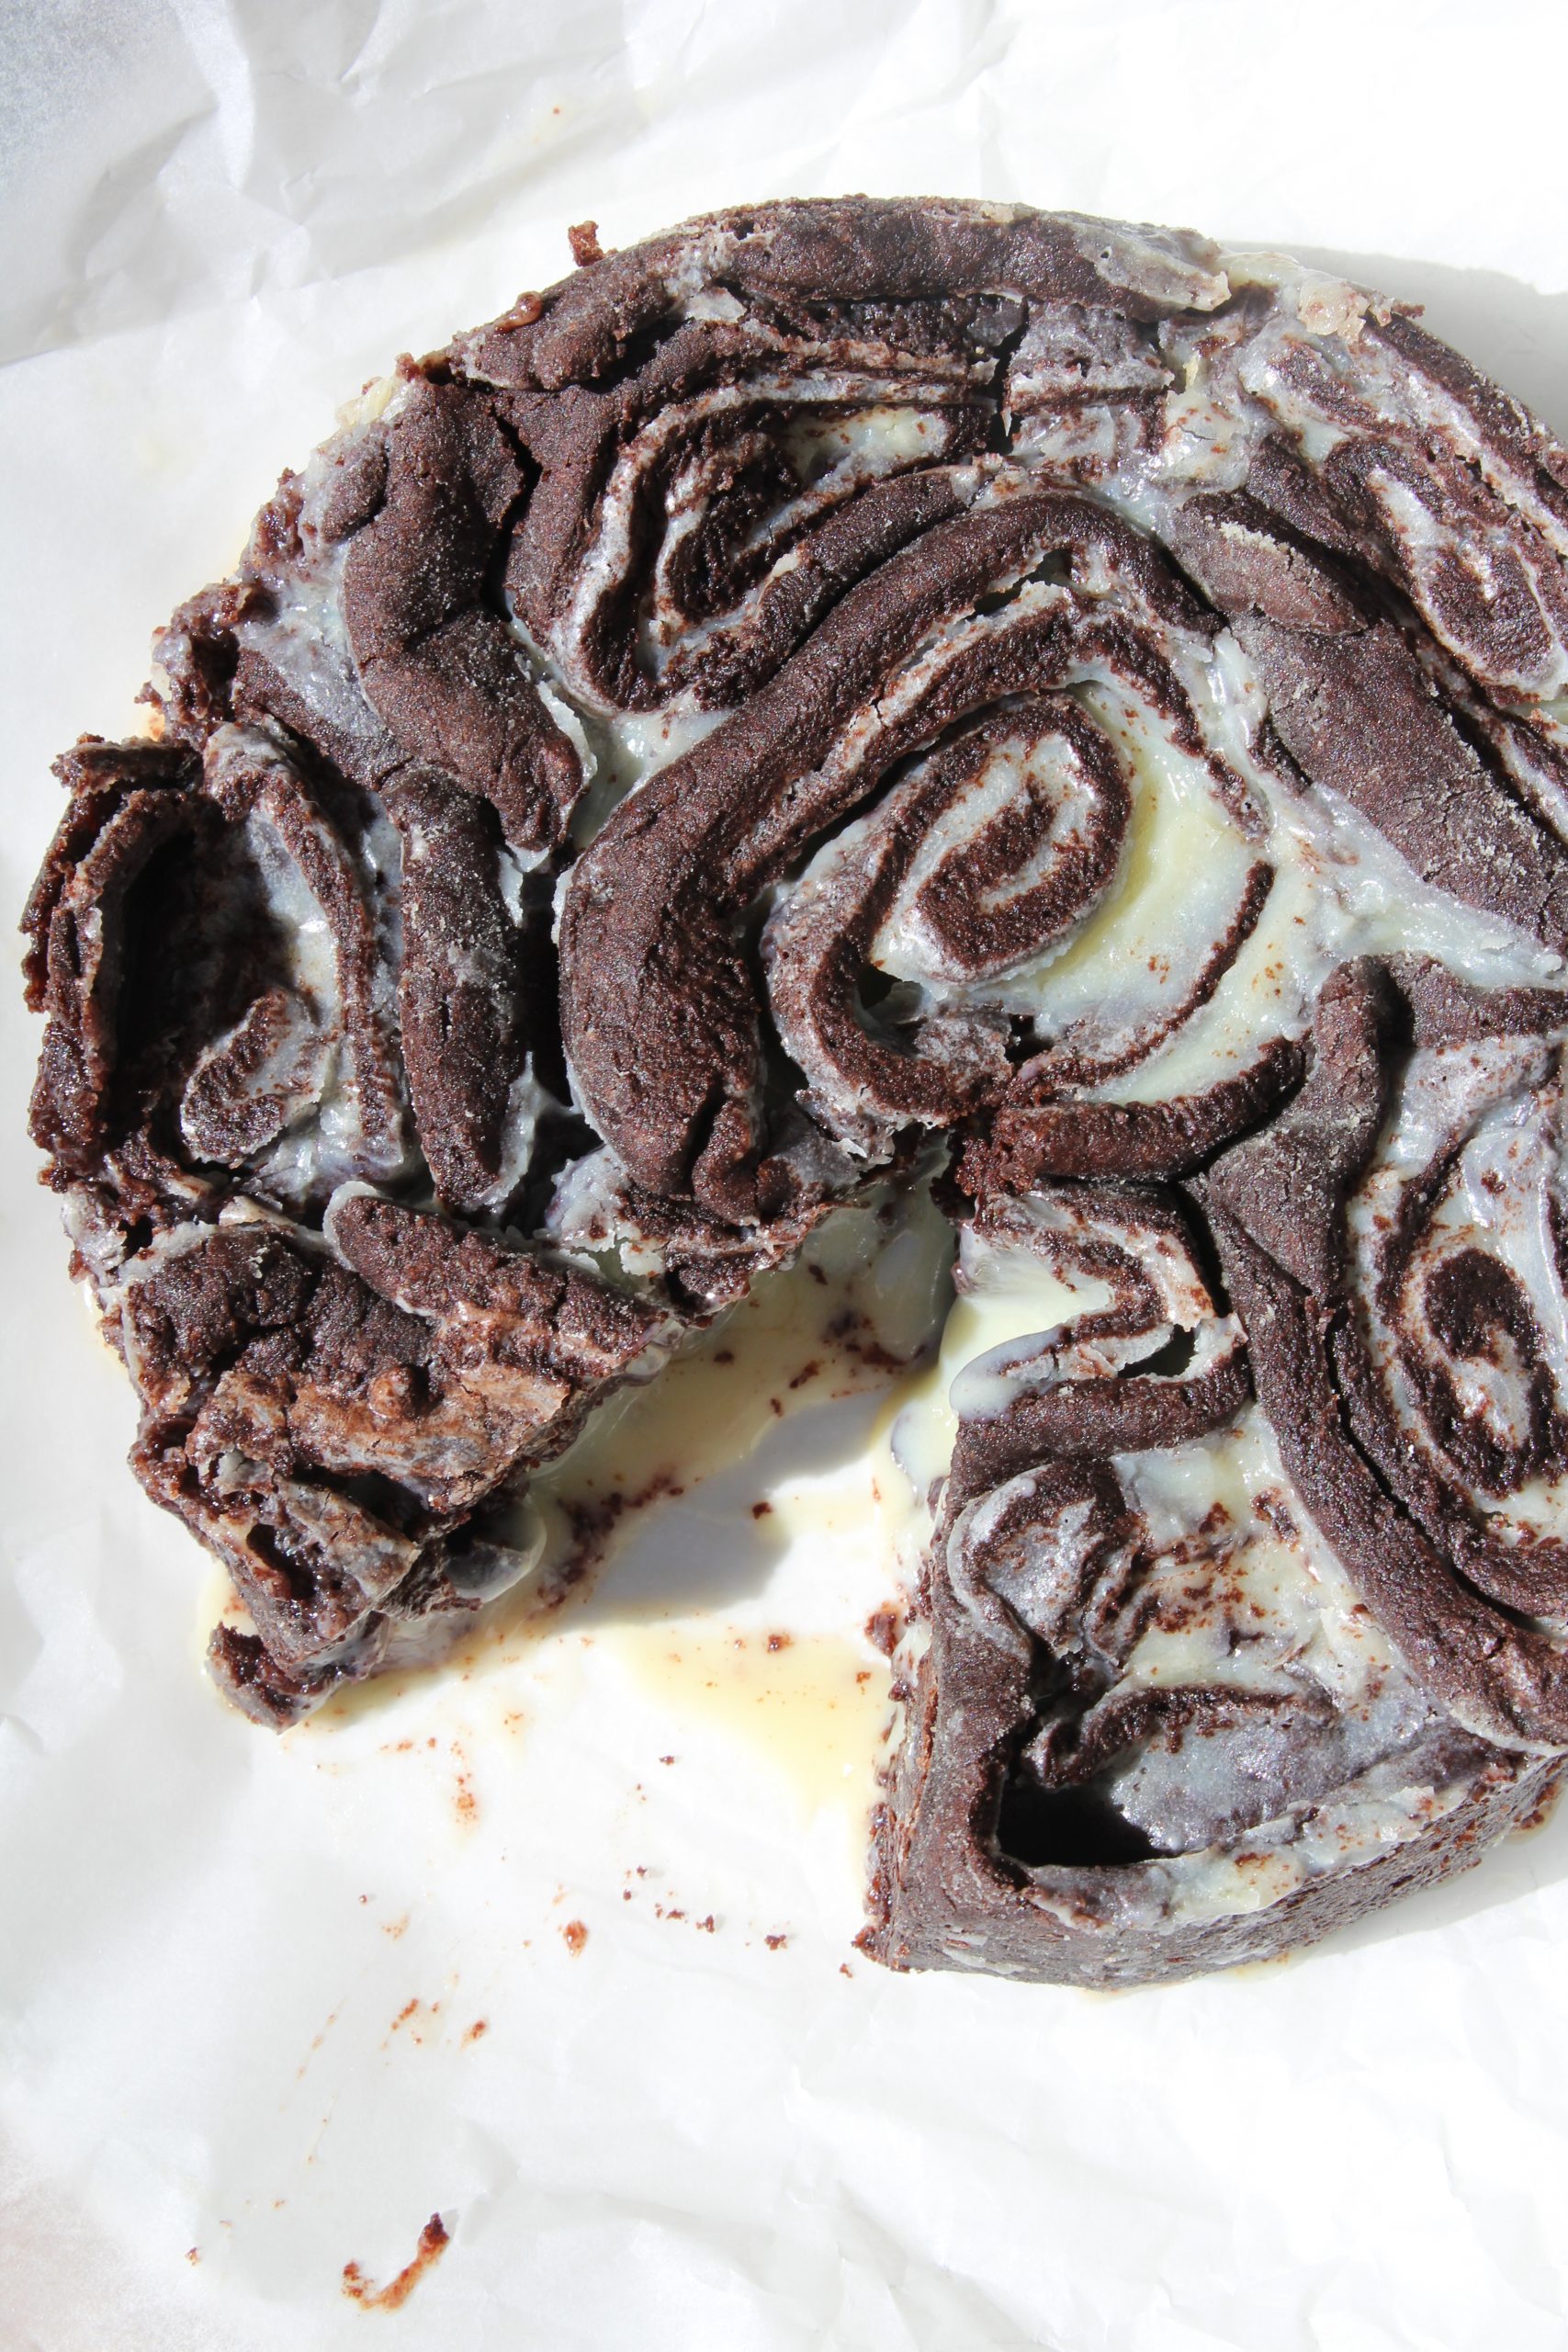 שושני בצק עוגיות שוקולד במילוי פרלין שוקולד - עוגת עוגיות אמסטרדם